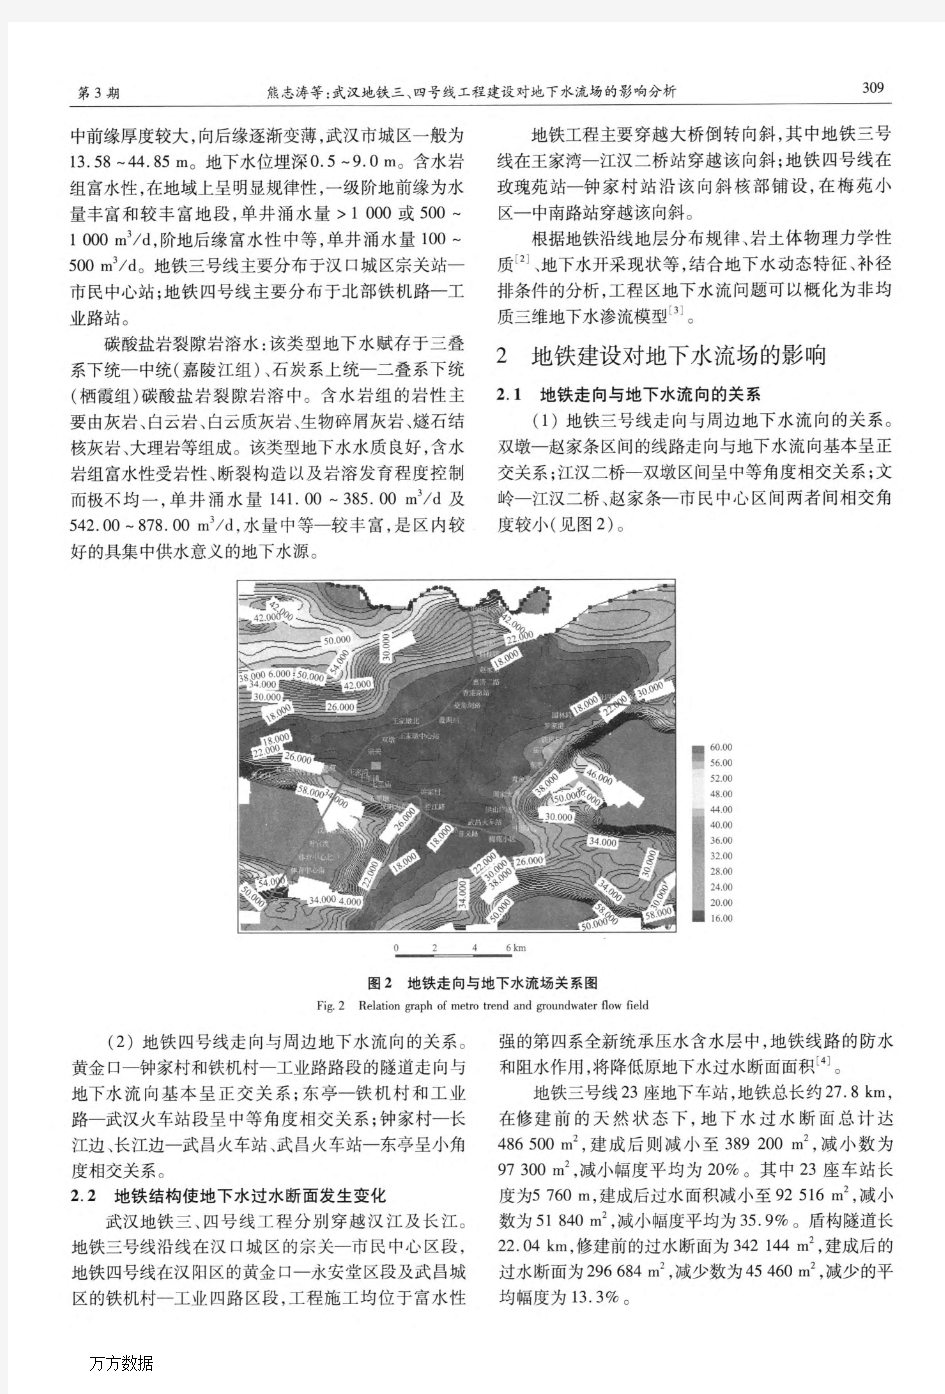 武汉地铁三、四号线工程建设对地下水流场的影响分析(论文)